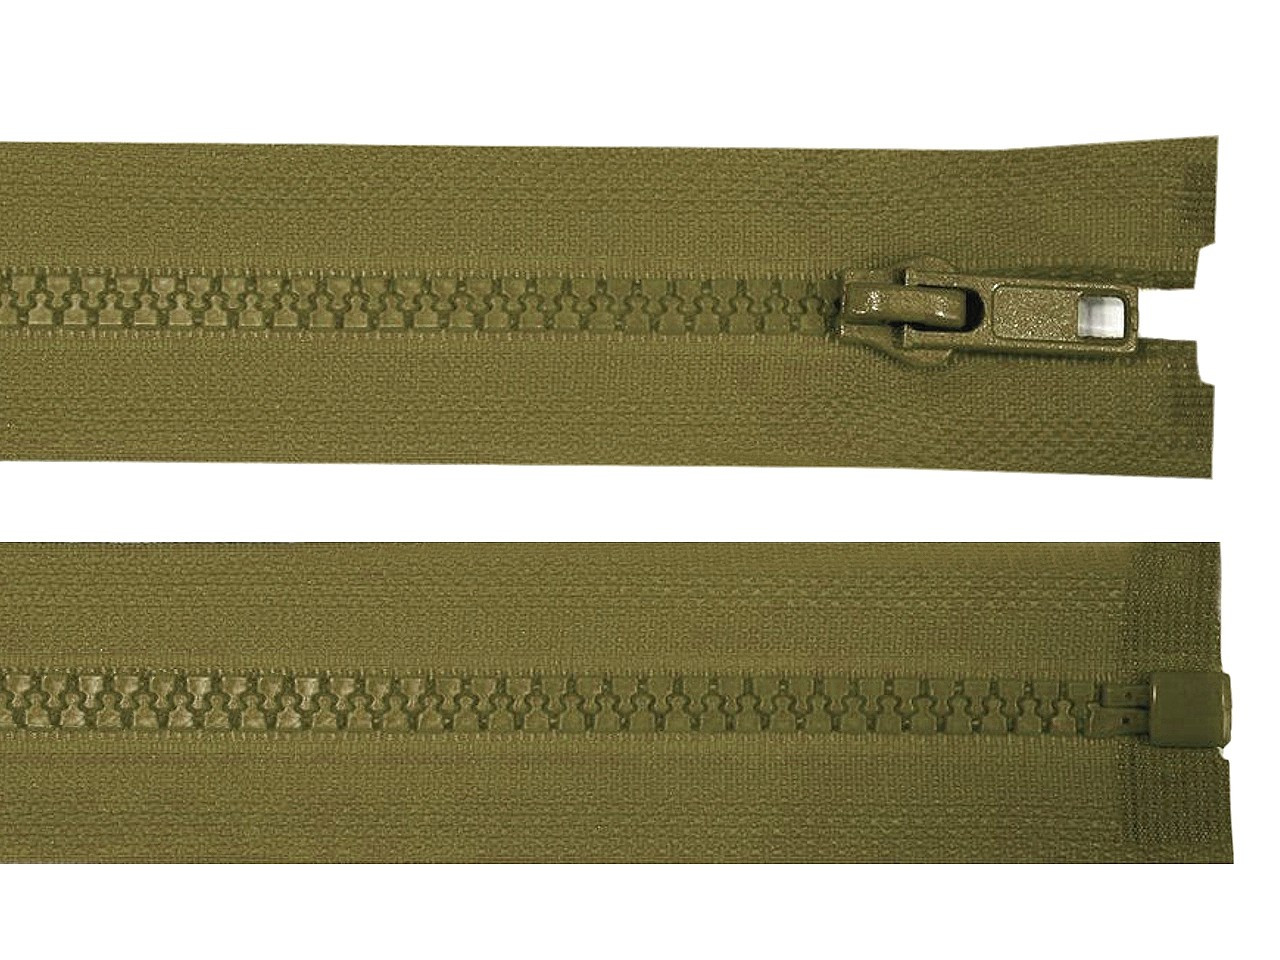 Kostěný zip šíře 5 mm délka 75 cm bundový, barva 298 zelená khaki tmavá